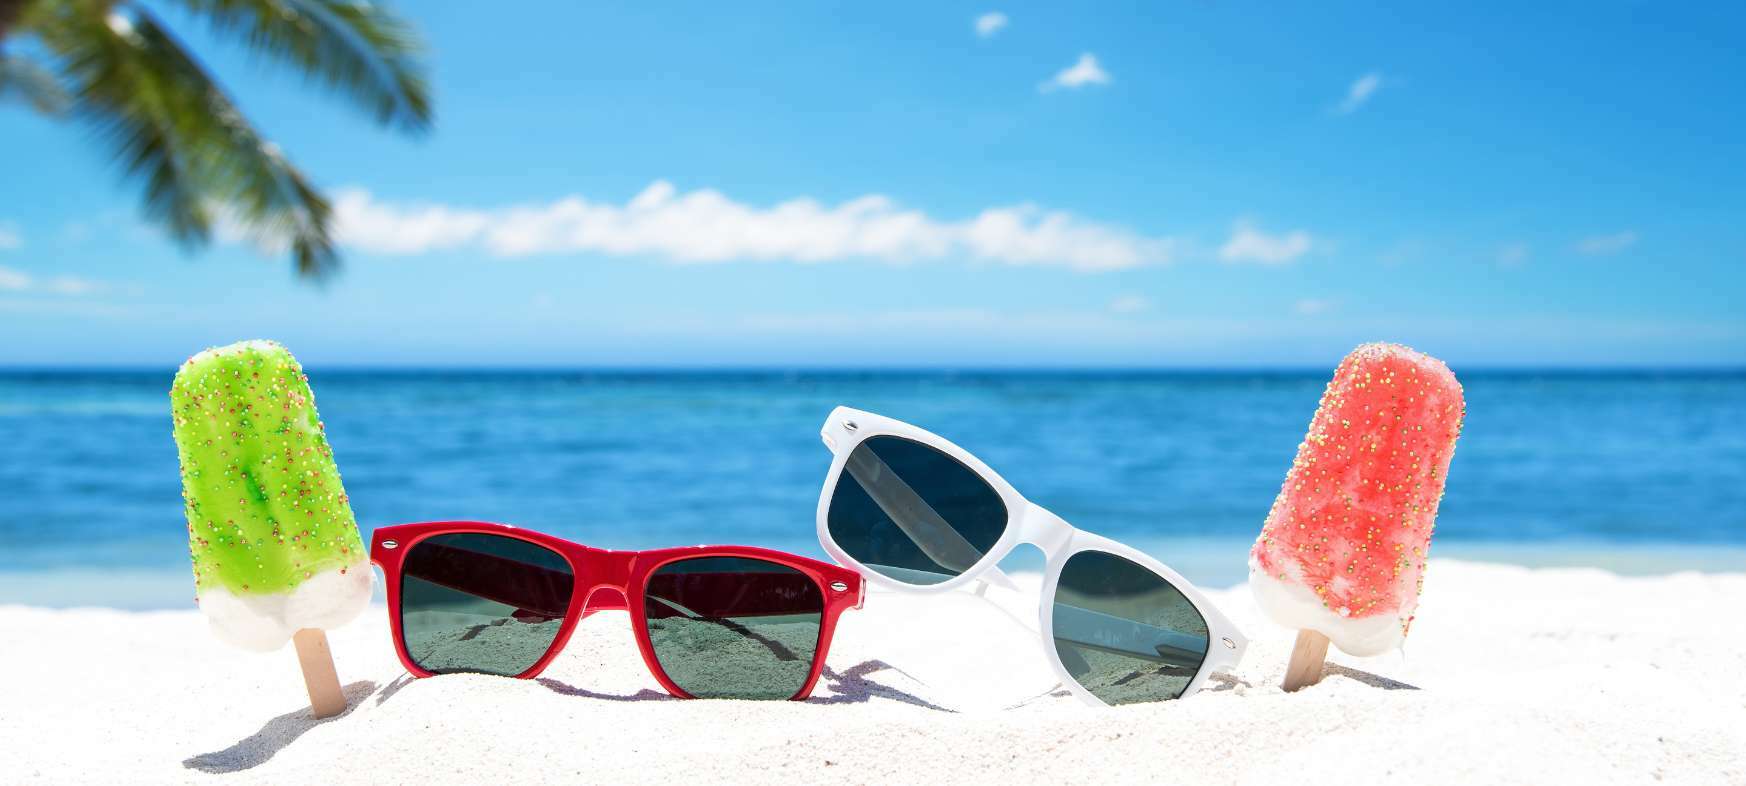 Eis am Stil und zwei Sonnenbrillen am Strand